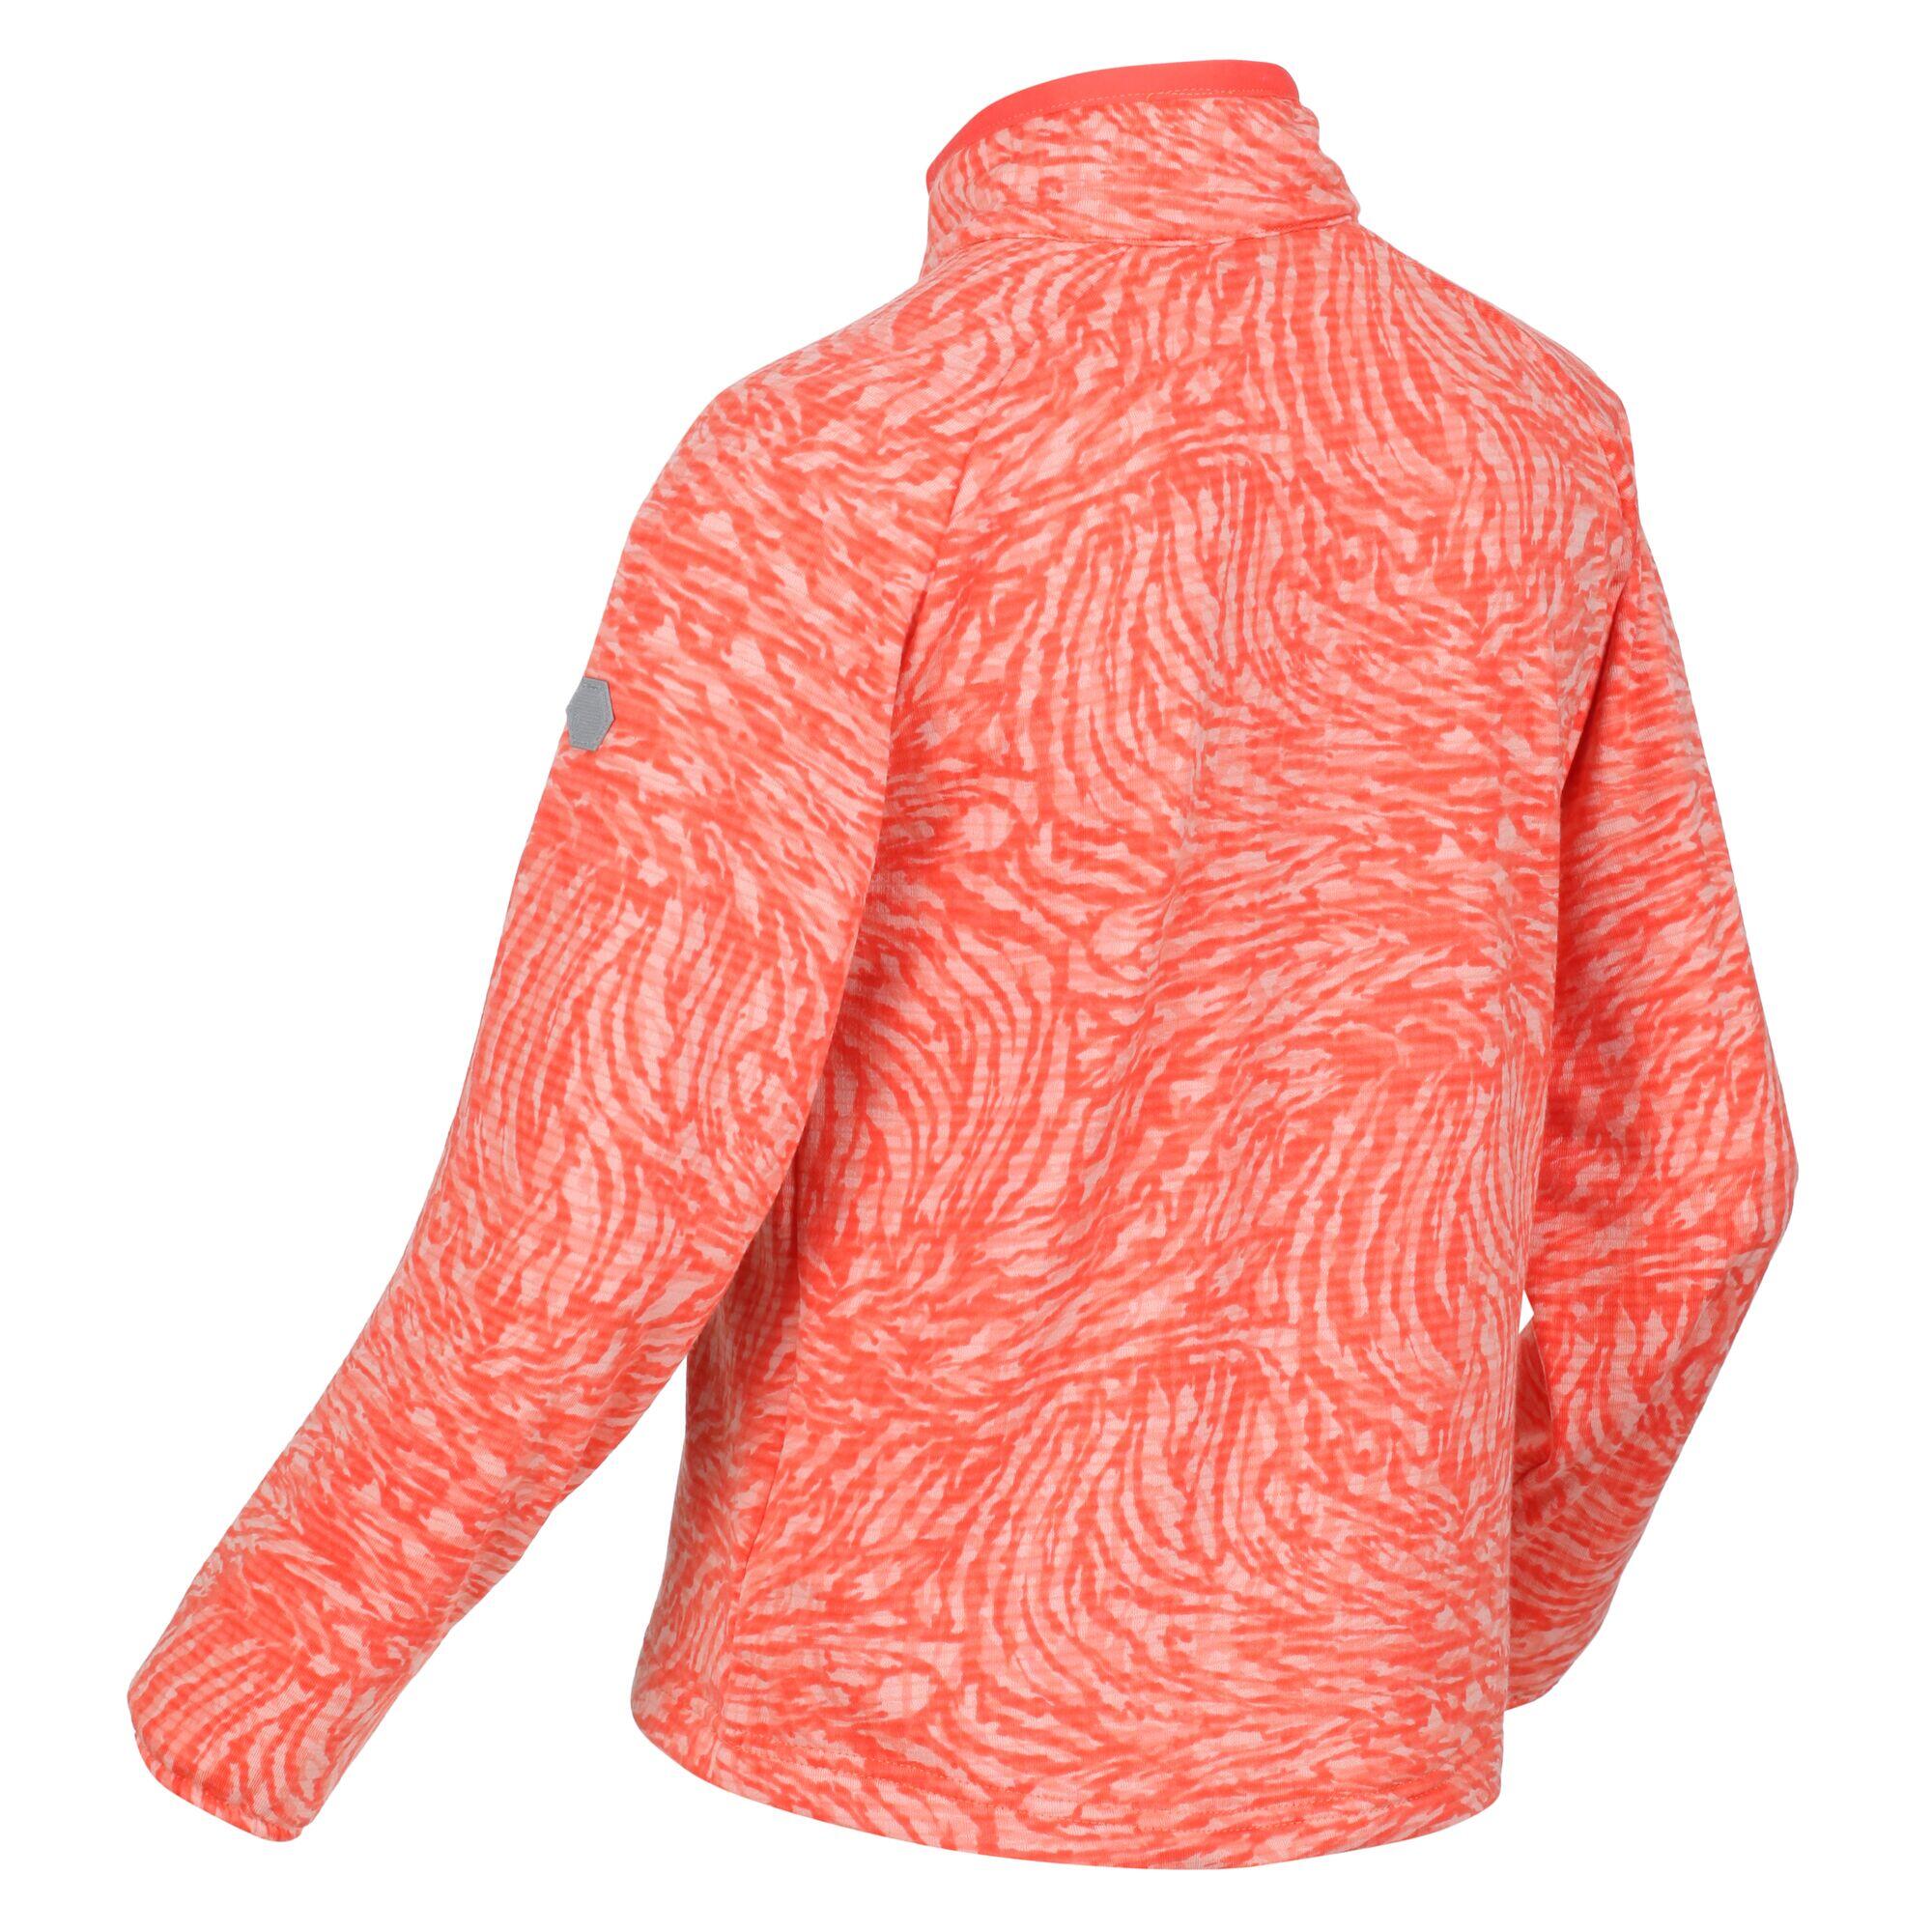 Junior Highton Walking Kids Half-Zip Fleece - Orange Coral 5/5